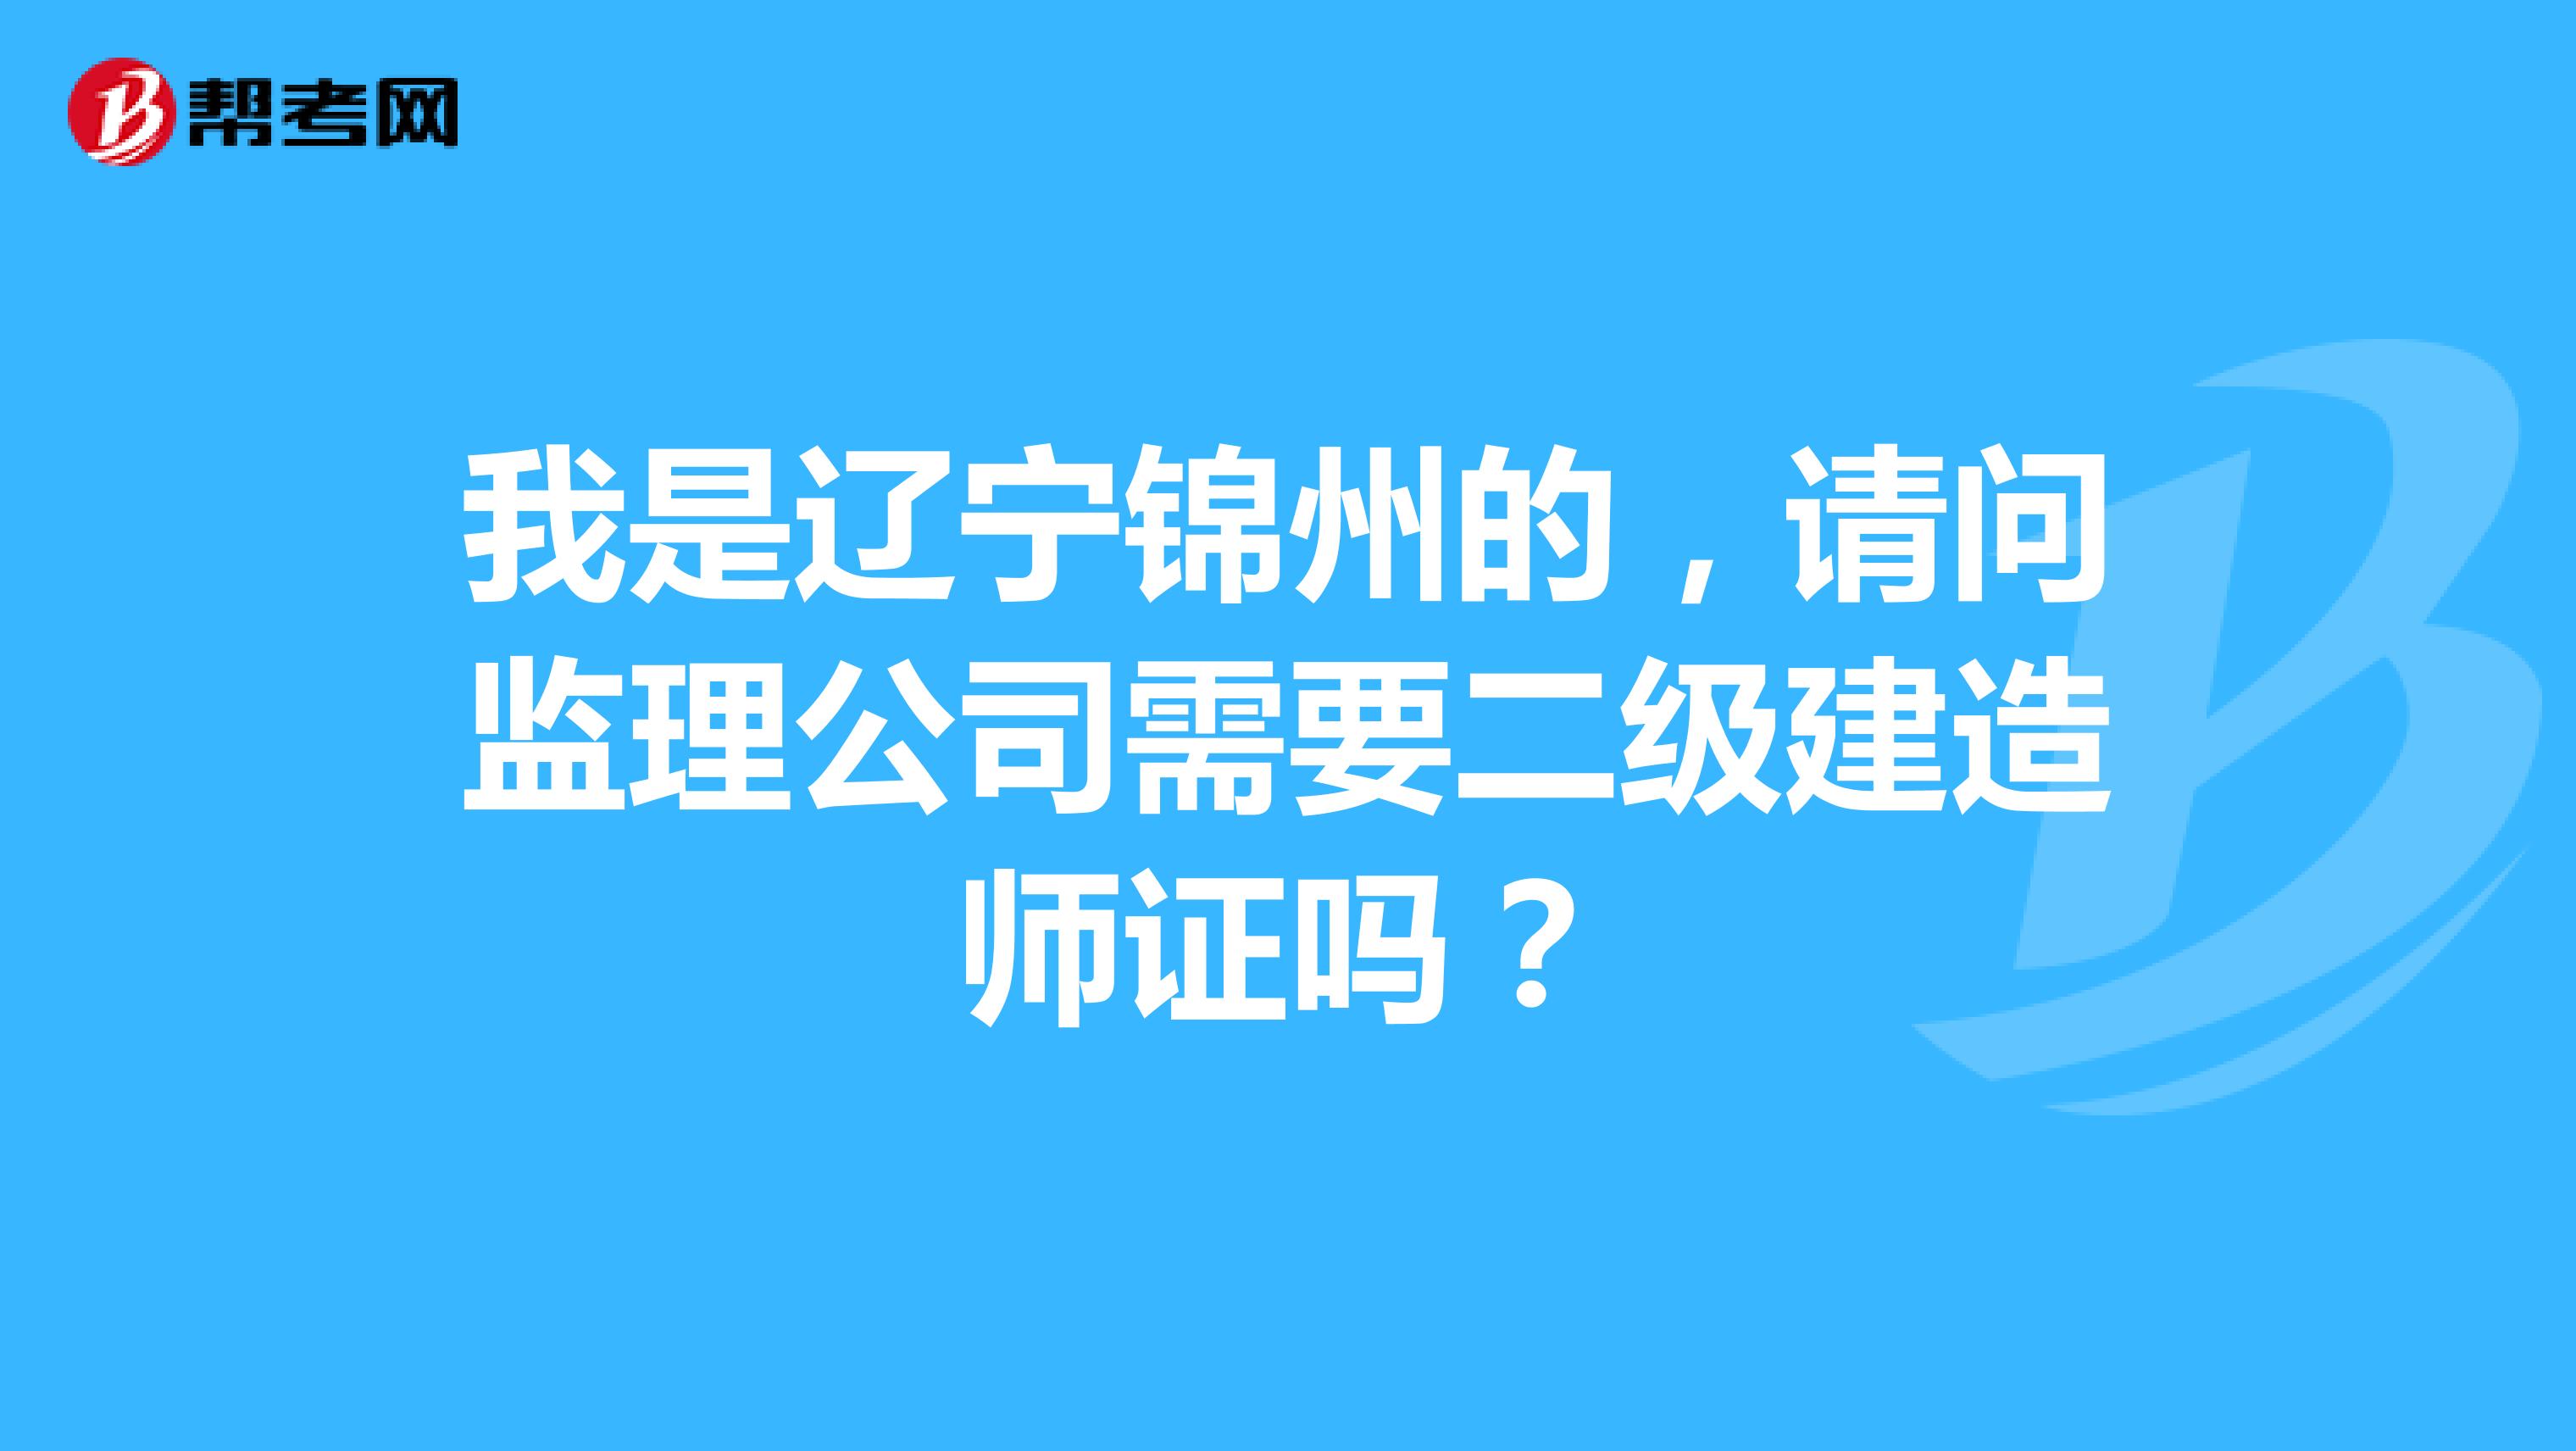 我是辽宁锦州的，请问监理公司需要二级建造师证吗？